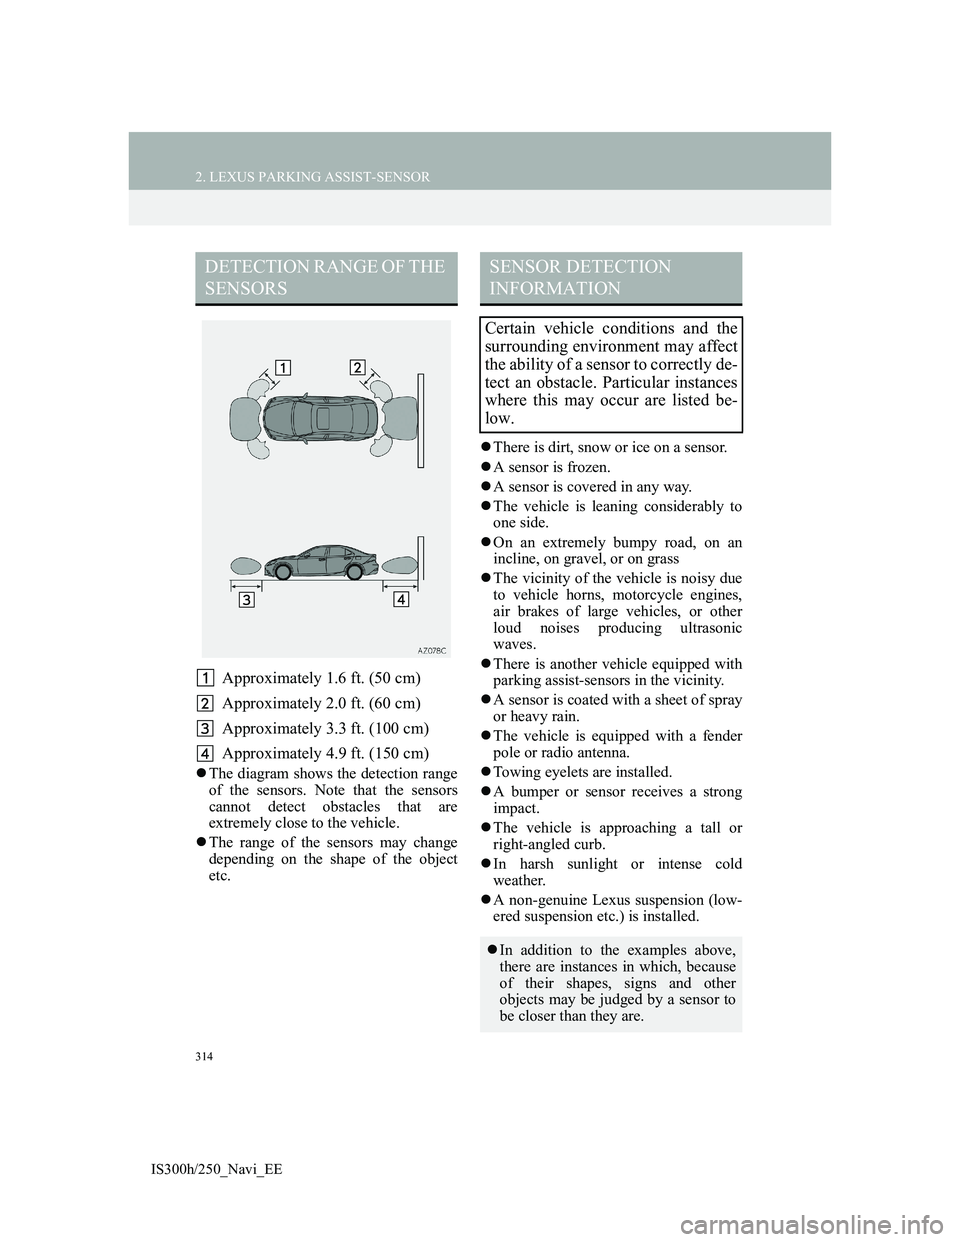 Lexus IS300h 2013  Navigation manual 314
2. LEXUS PARKING ASSIST-SENSOR
IS300h/250_Navi_EE
Approximately 1.6 ft. (50 cm)
Approximately 2.0 ft. (60 cm)
Approximately 3.3 ft. (100 cm)
Approximately 4.9 ft. (150 cm)
The diagram shows the